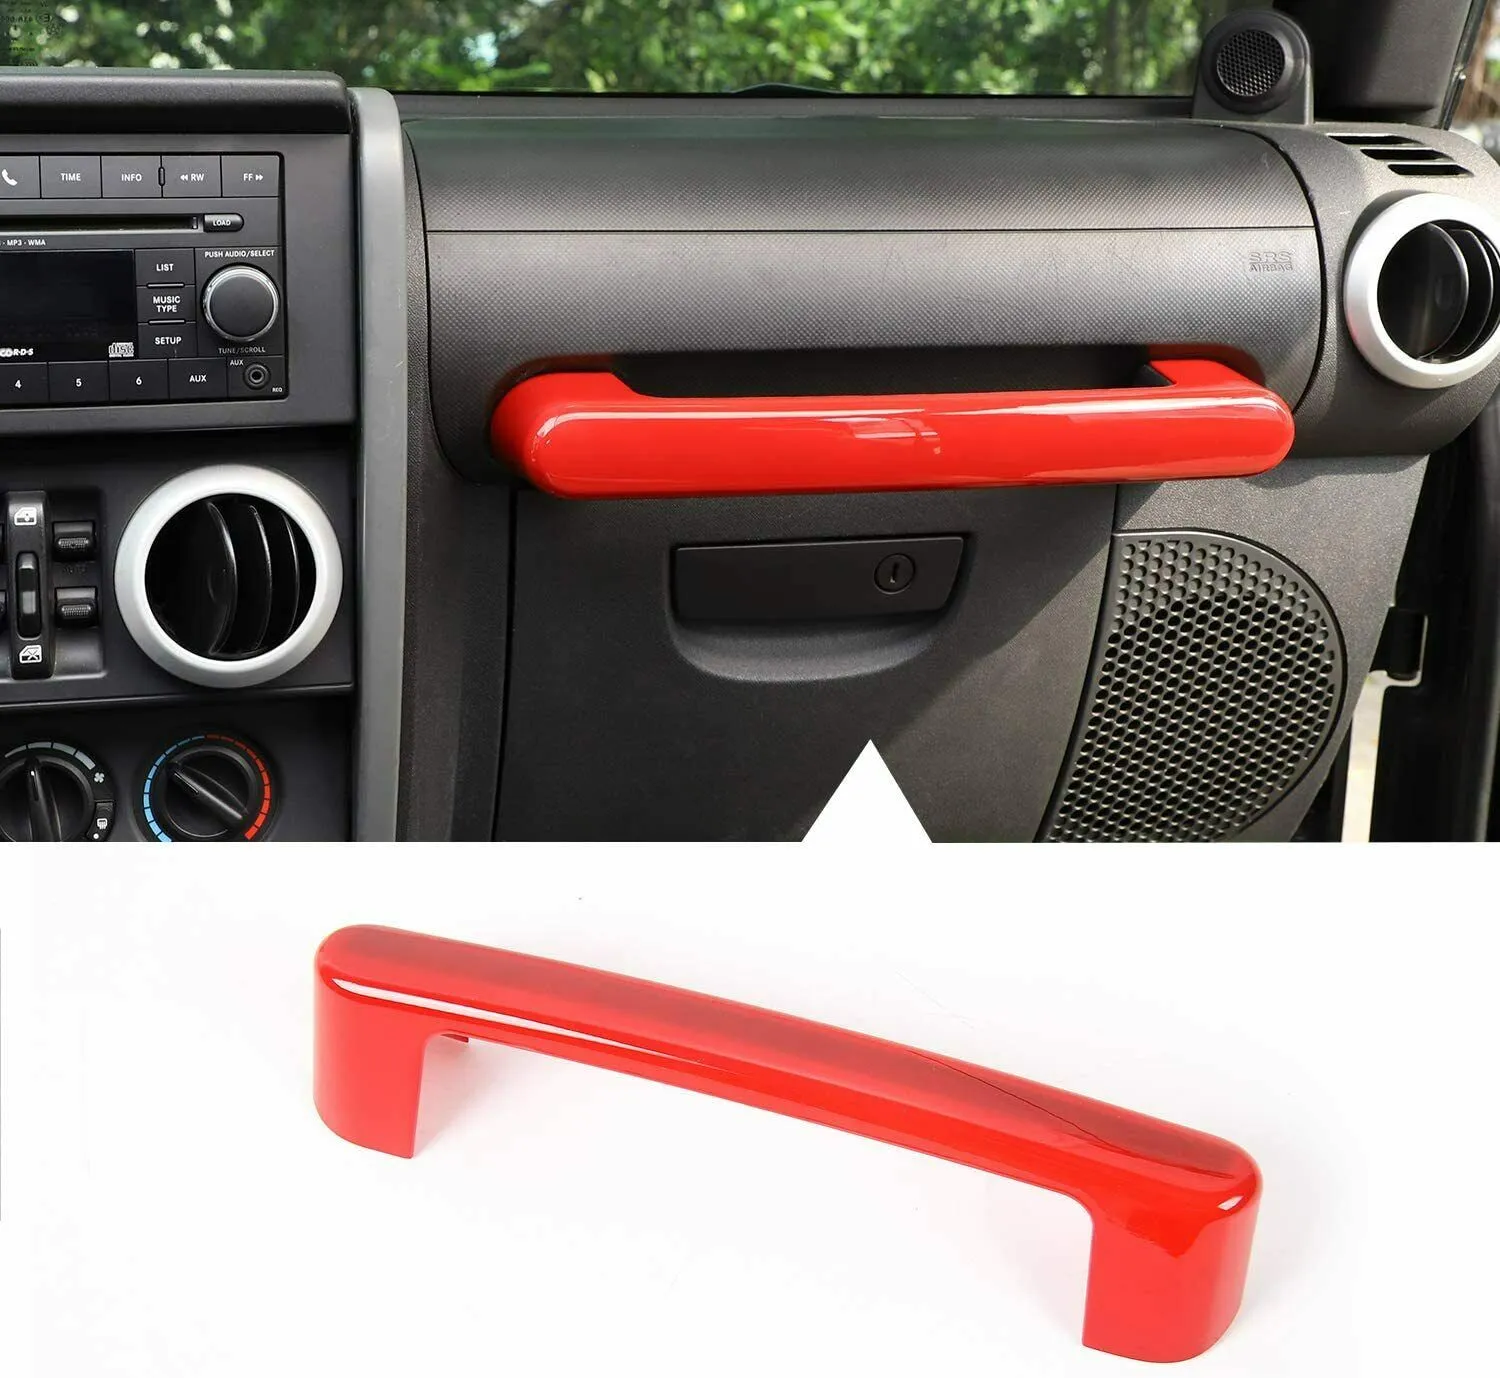 Garniture de cadre de couverture de poignée de copilote de voiture rouge pour accessoires intérieurs Jeep Wrangler JK JKU 2007-2010